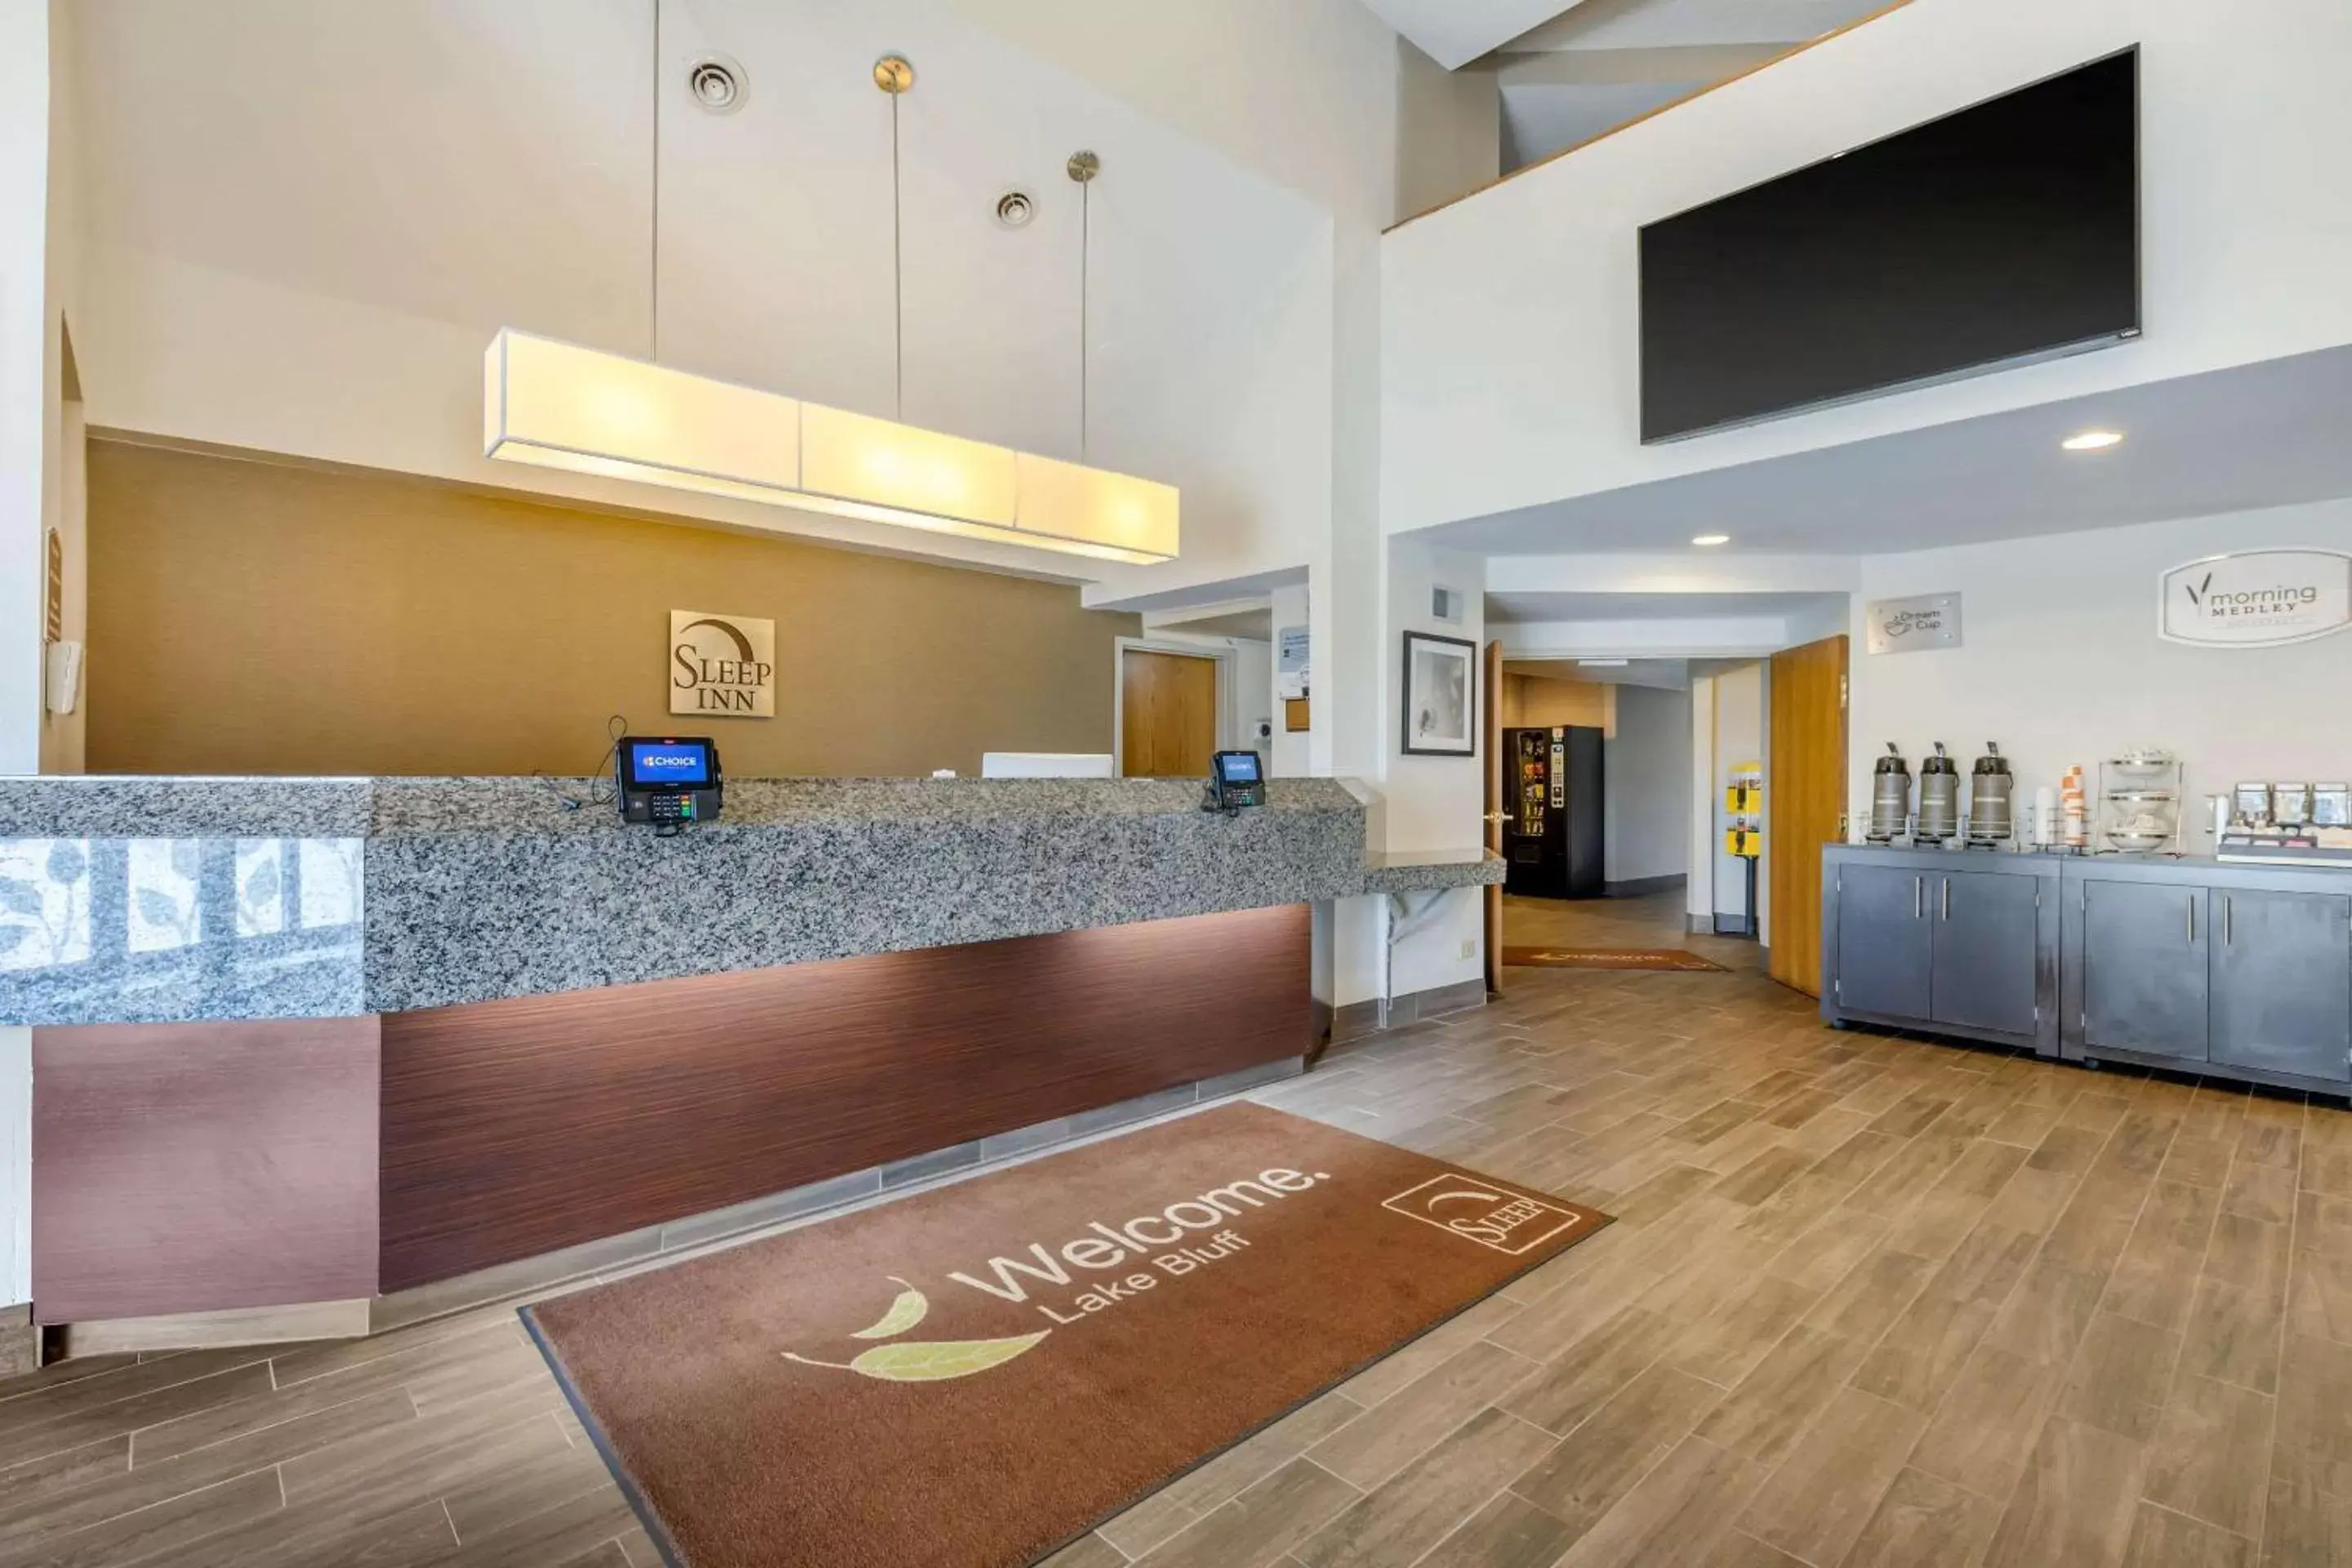 Lobby or reception, Lobby/Reception in Sleep Inn near Great Lakes Naval Base